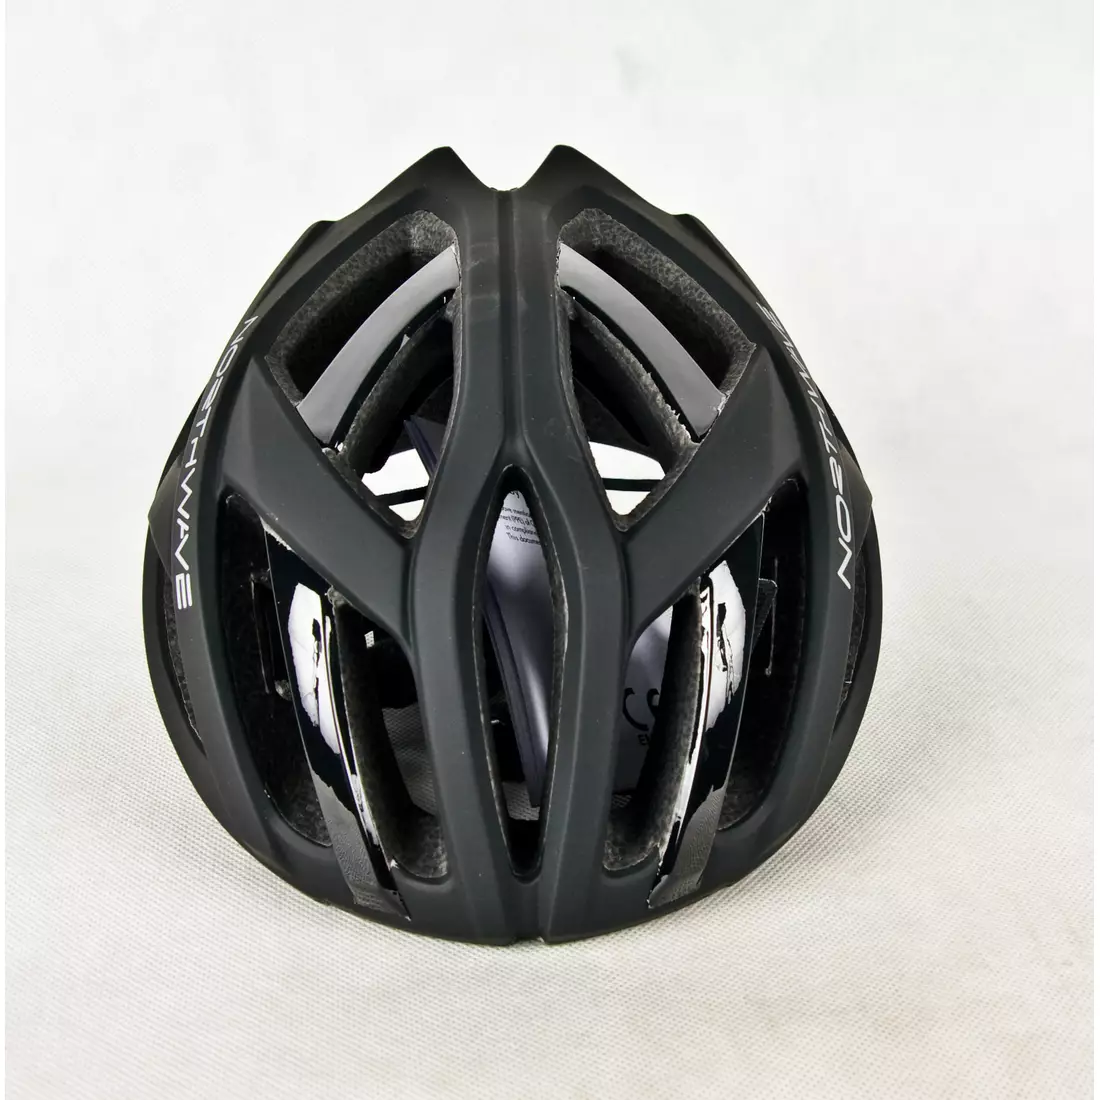 Cyklistická přilba NORTHWAVE SPEEDSTER černá